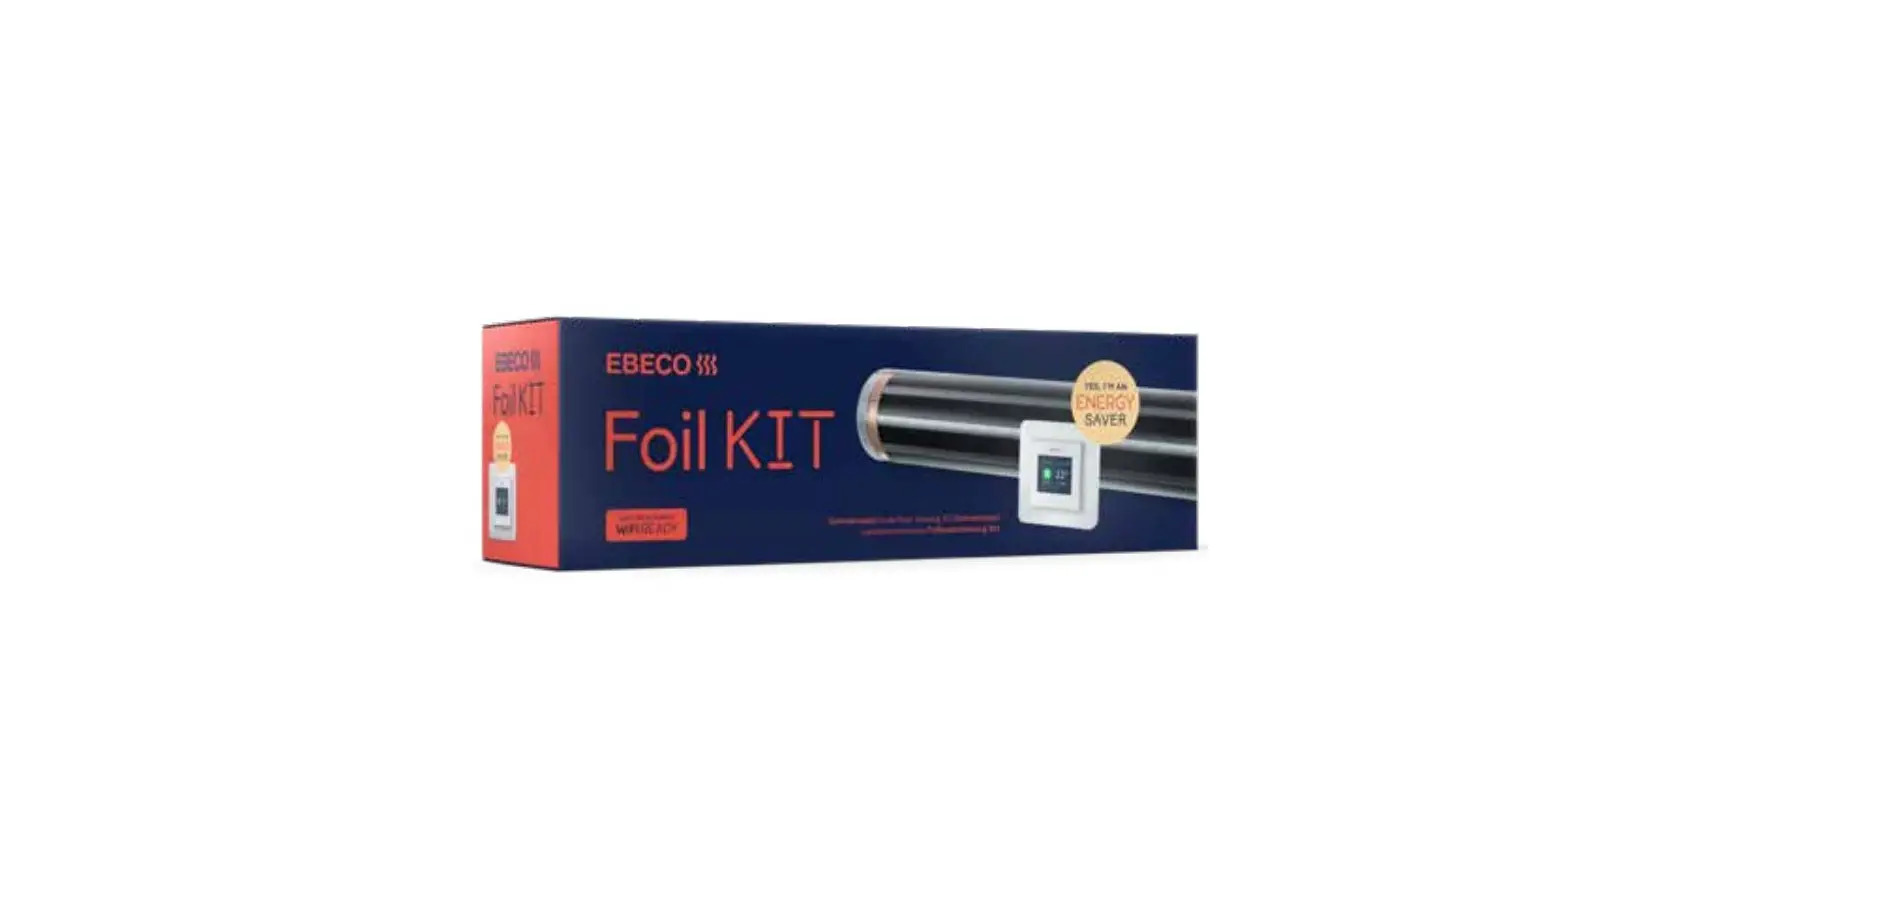 Foil Kit and Foil 230 V